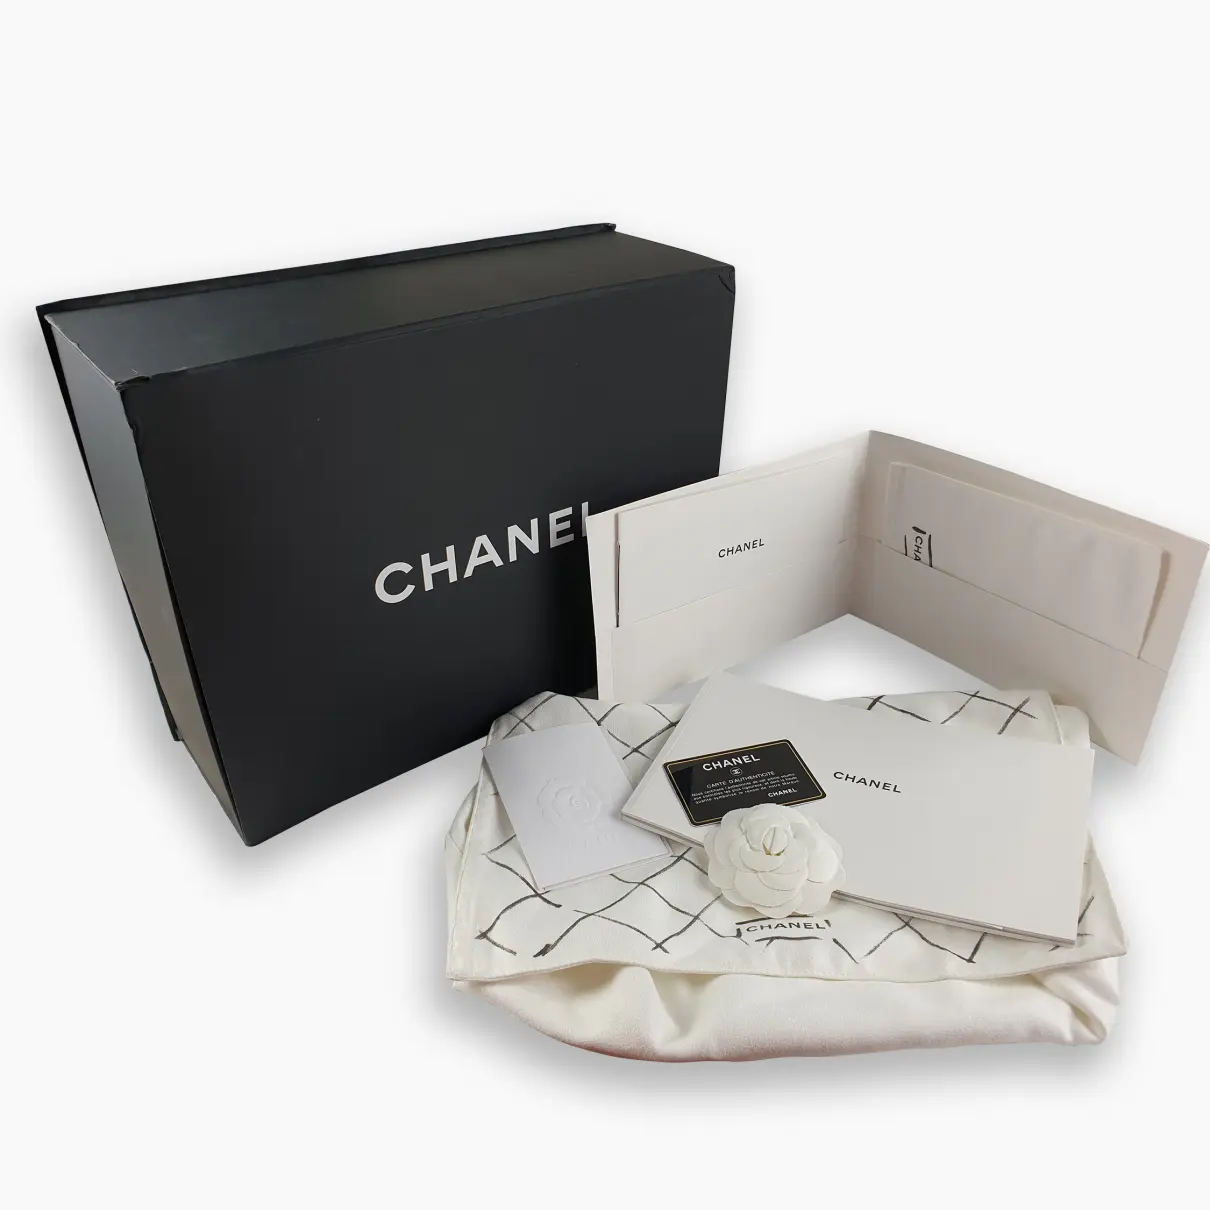 Luxury Chanel Backpacks Women